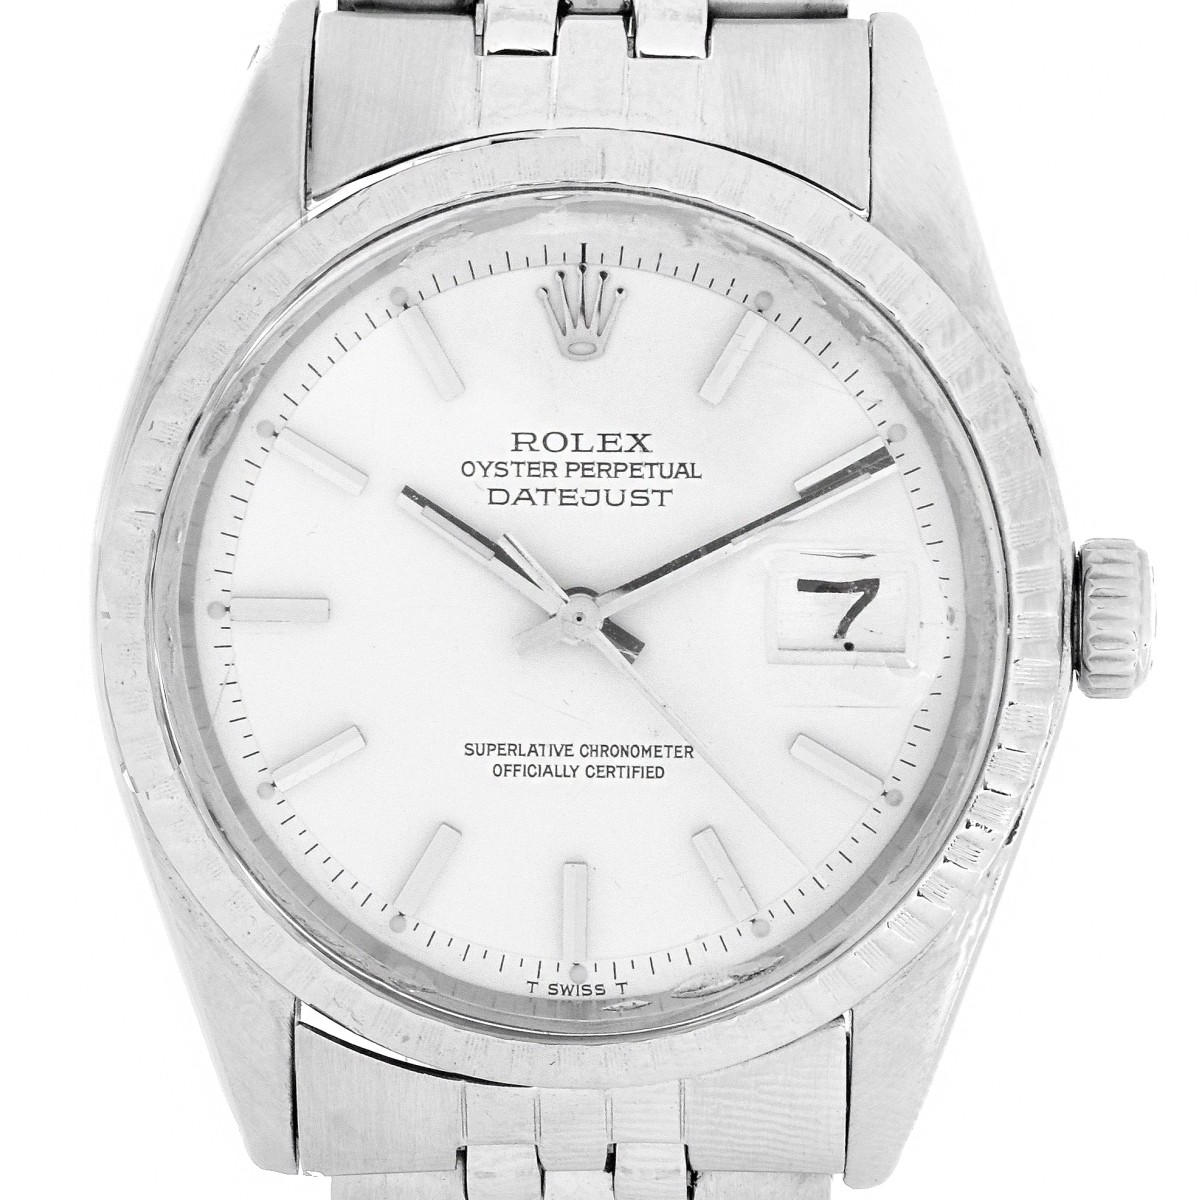 Man's Vintage Rolex Datejust Watch